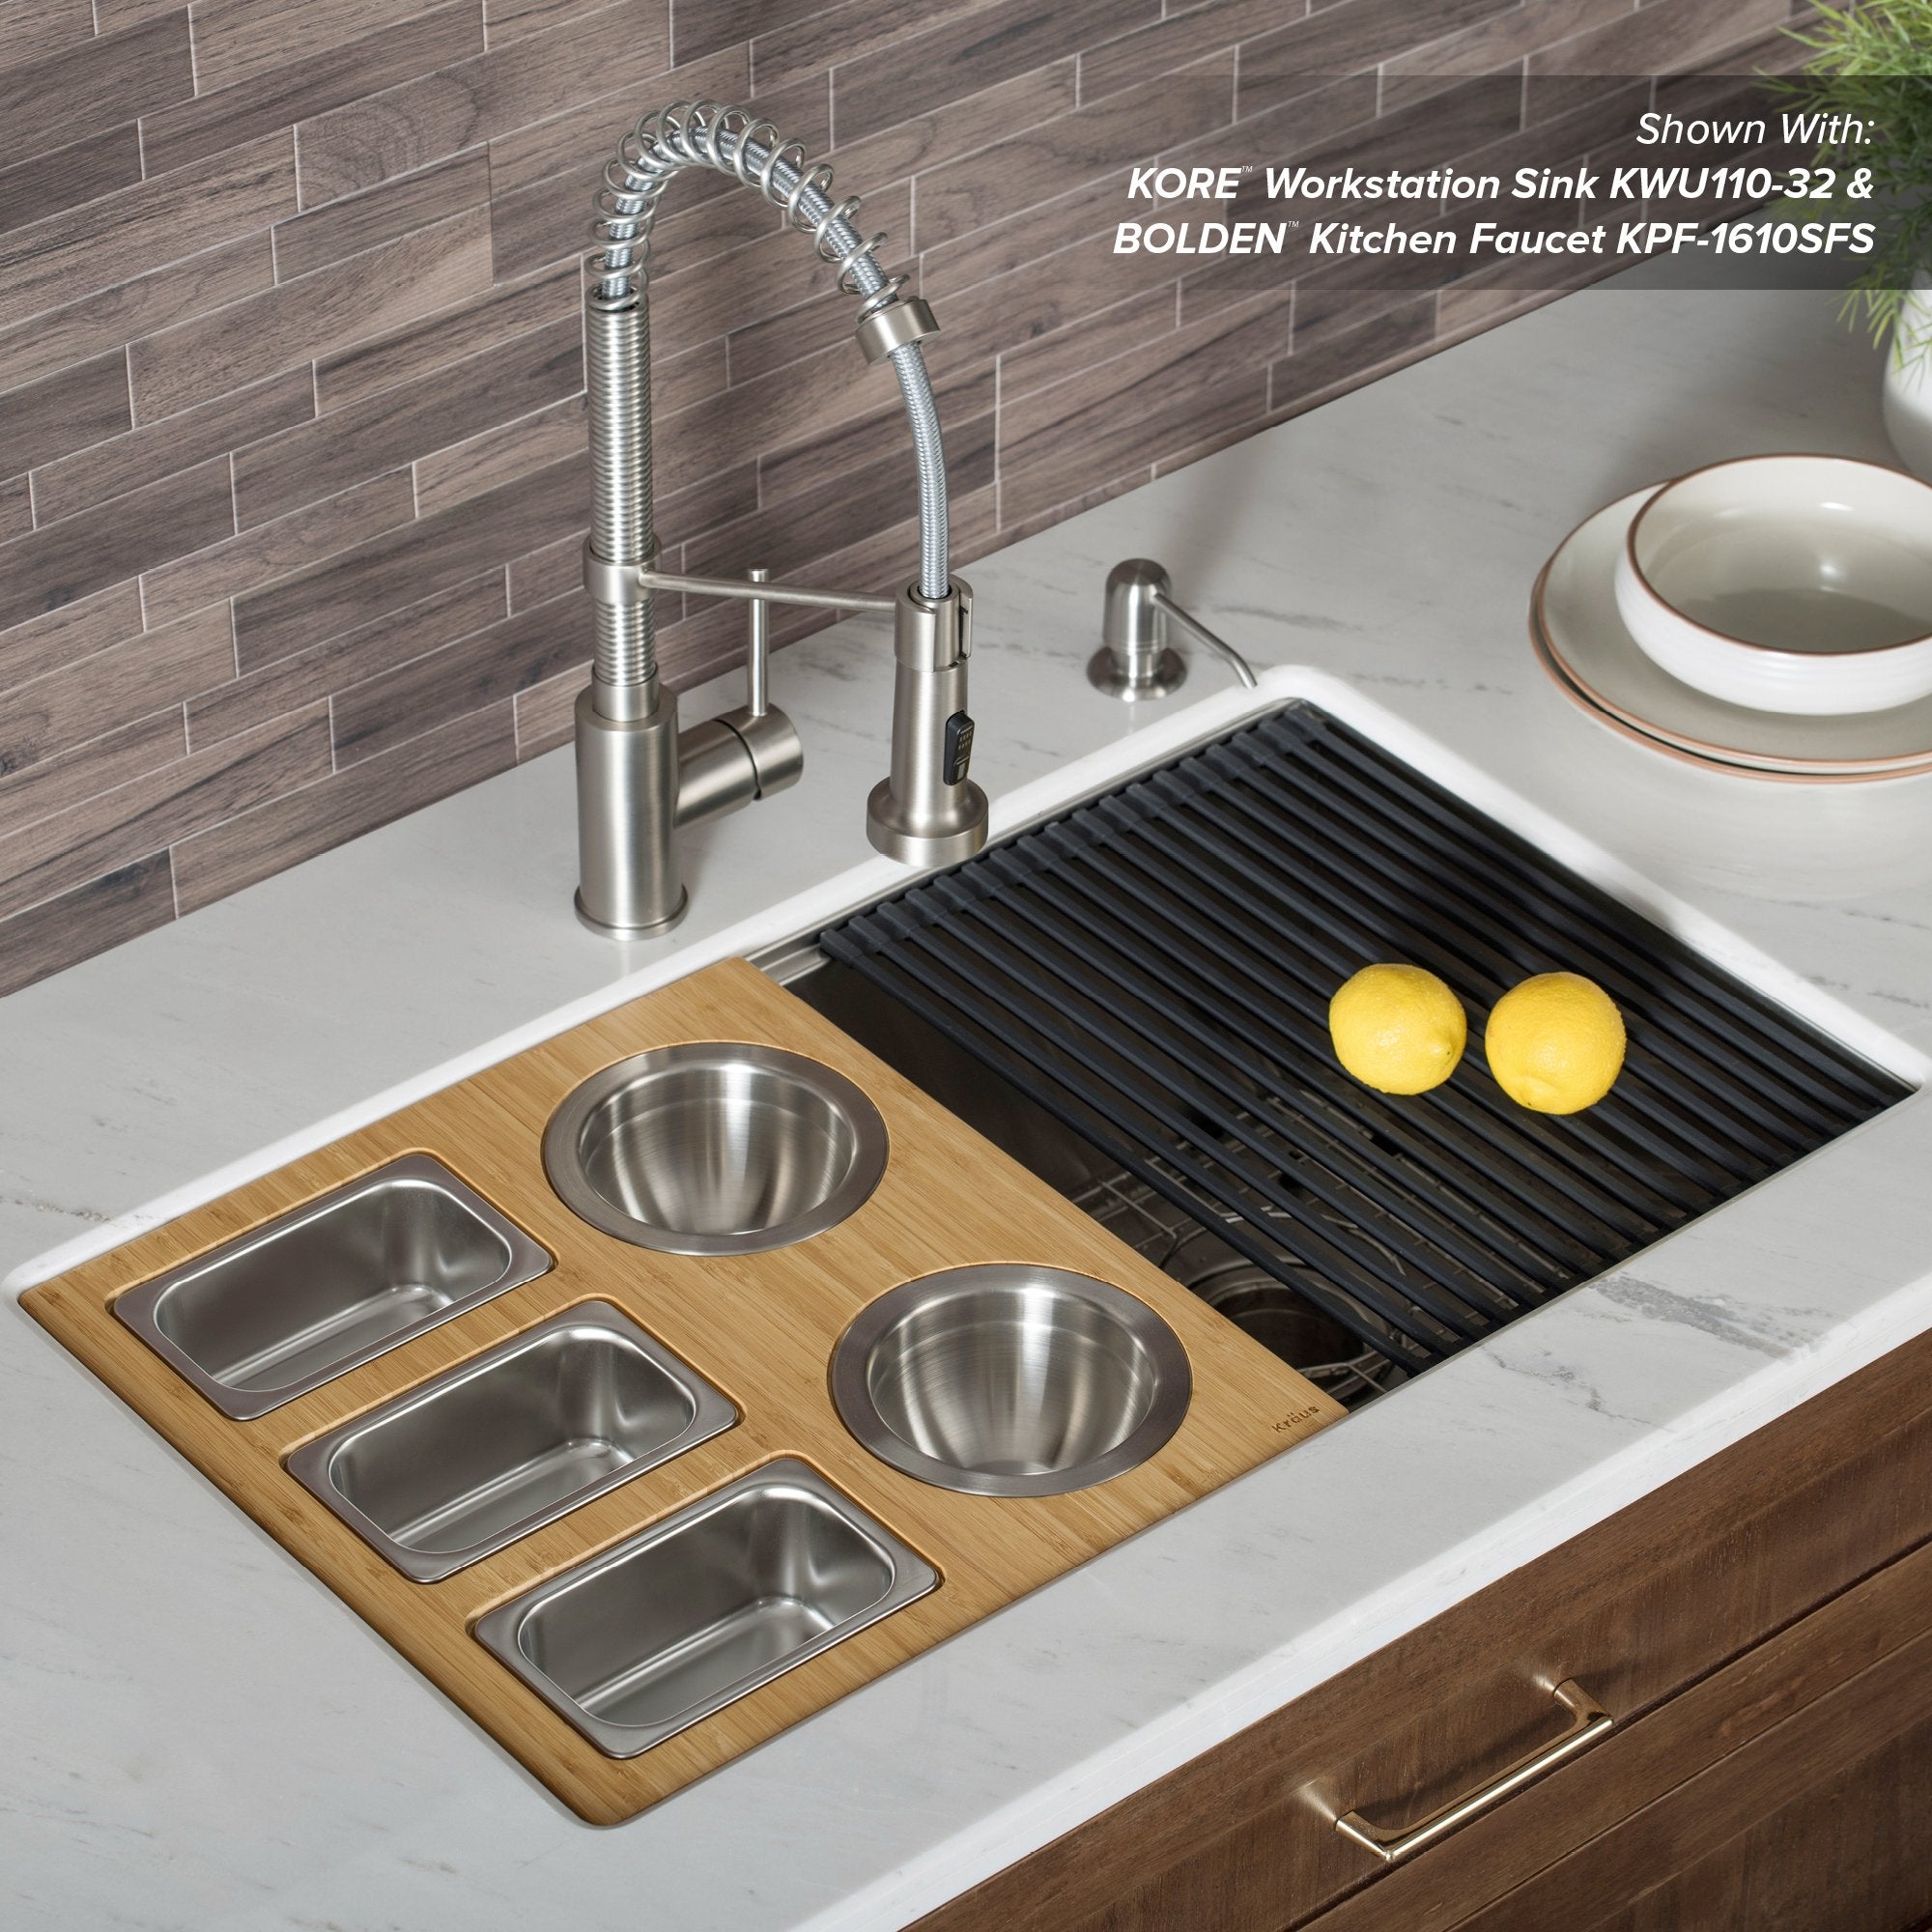 KRAUS Workstation Kitchen Sink Serving Board Set with Assorted Bowls-Kitchen Accessories-KRAUS